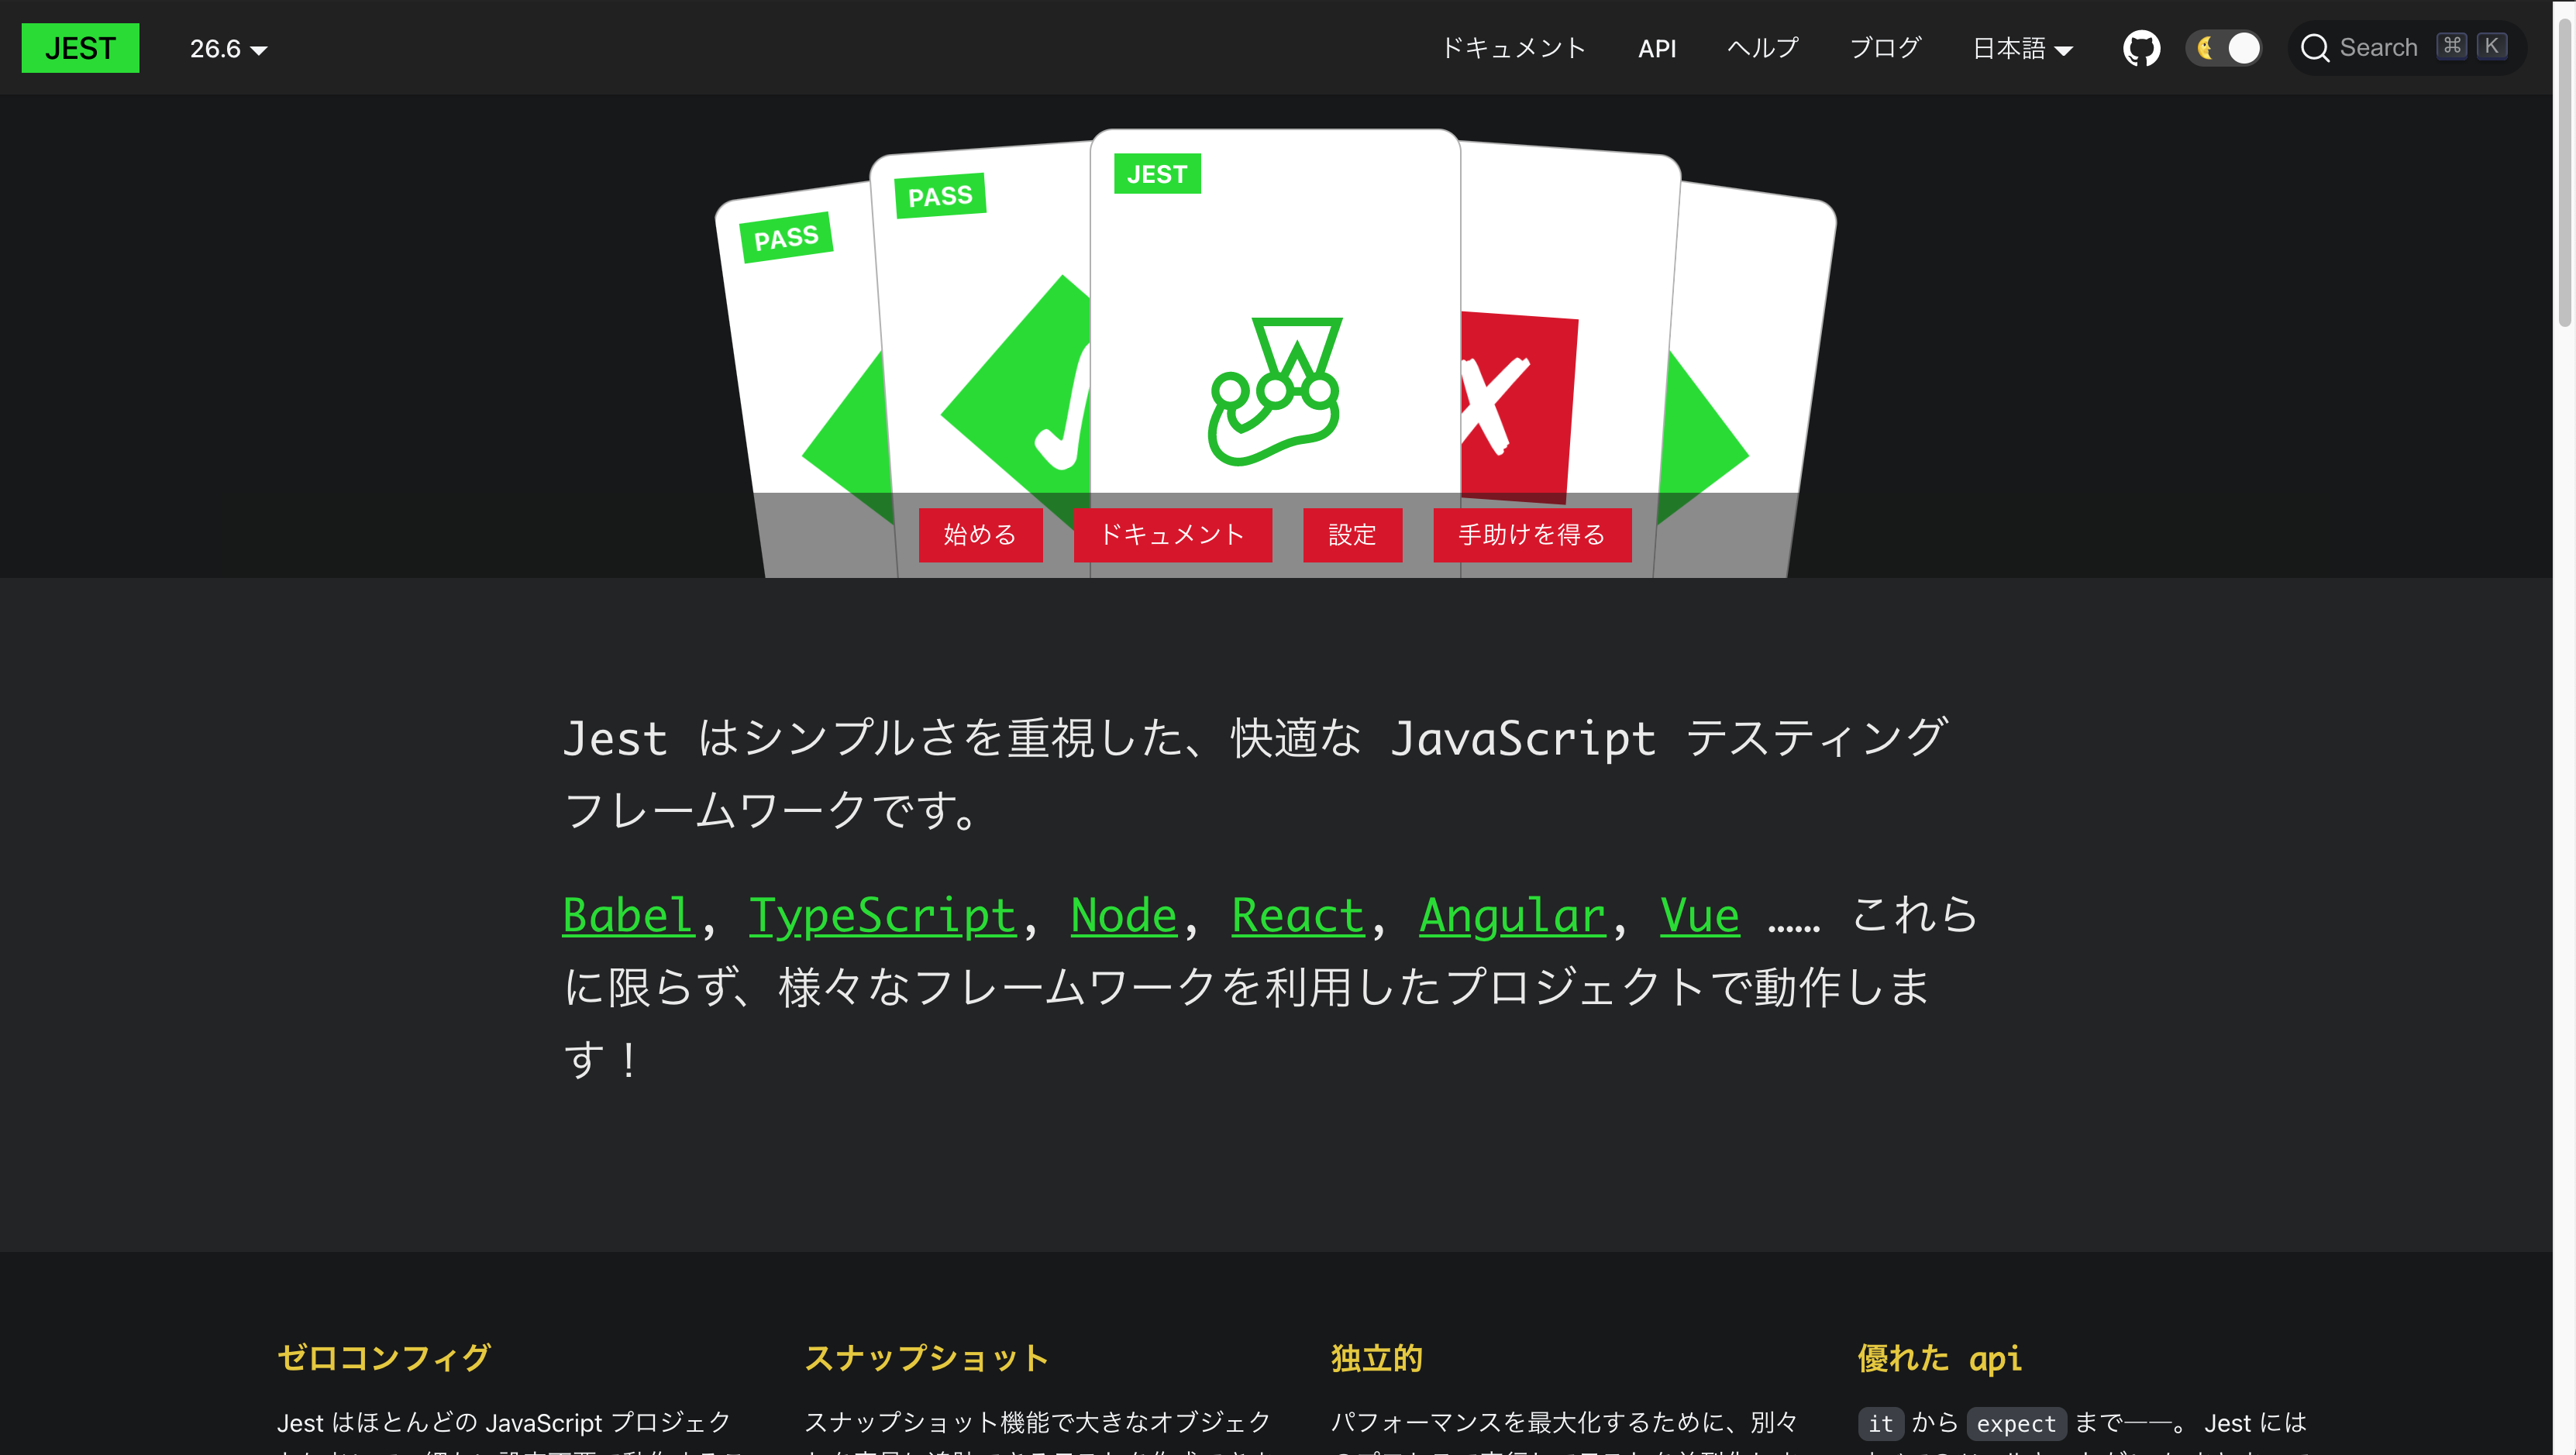 Le nouveau site de Jest construit avec Docusaurus v2 en japonais